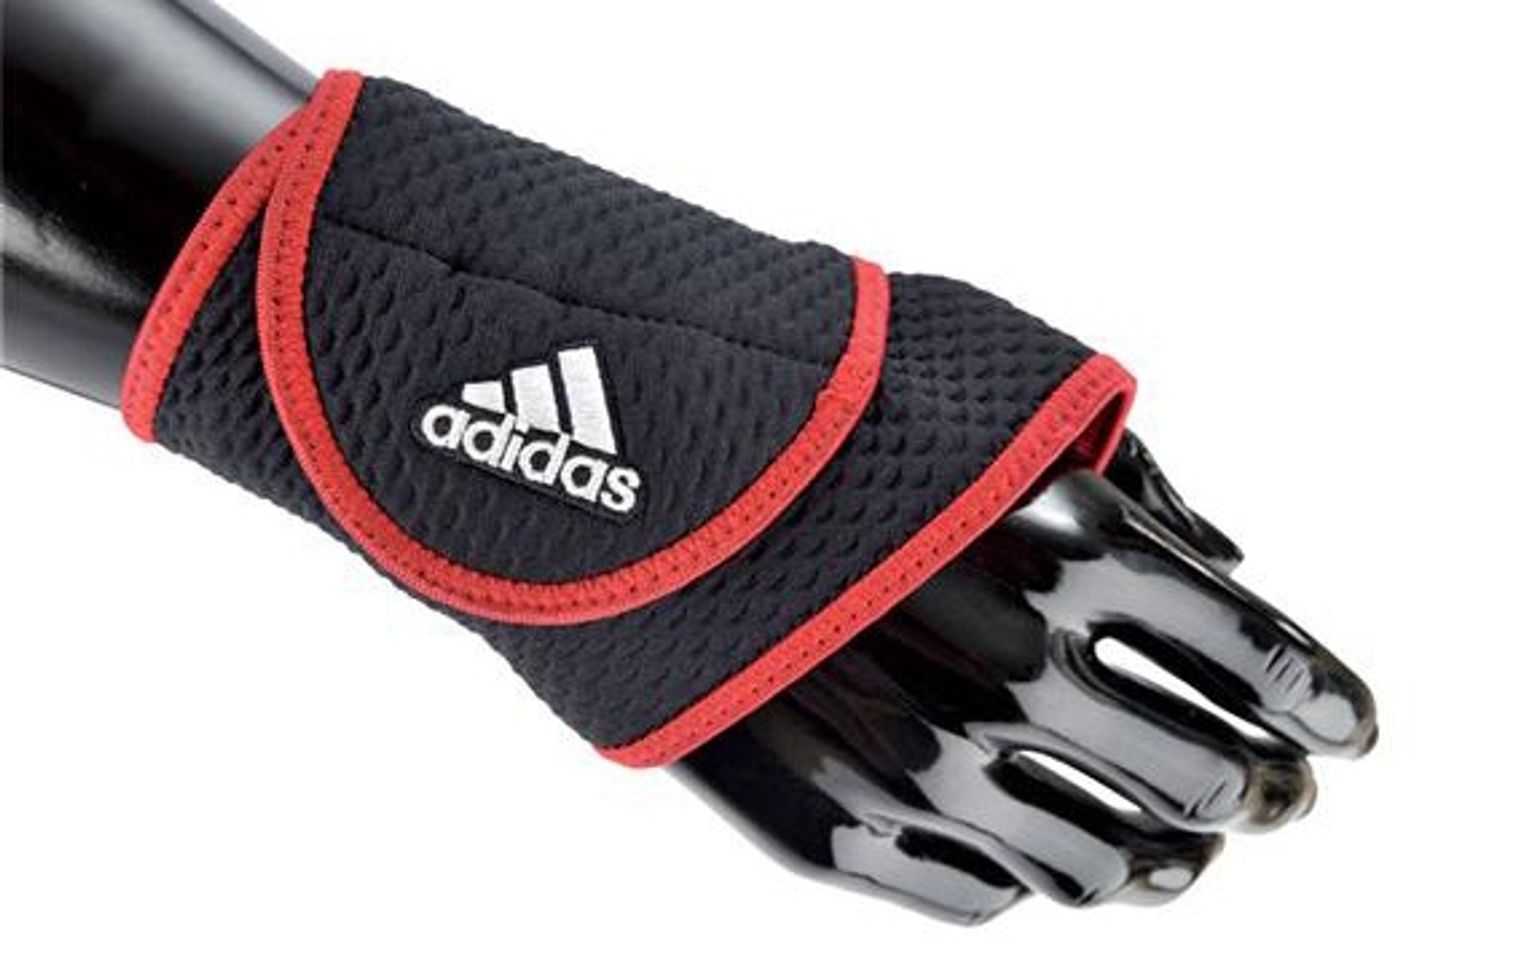 Băng cổ tay được thiết kế thời trang và nổi bật với cách phối hai màu đen đỏ khỏe khoắn